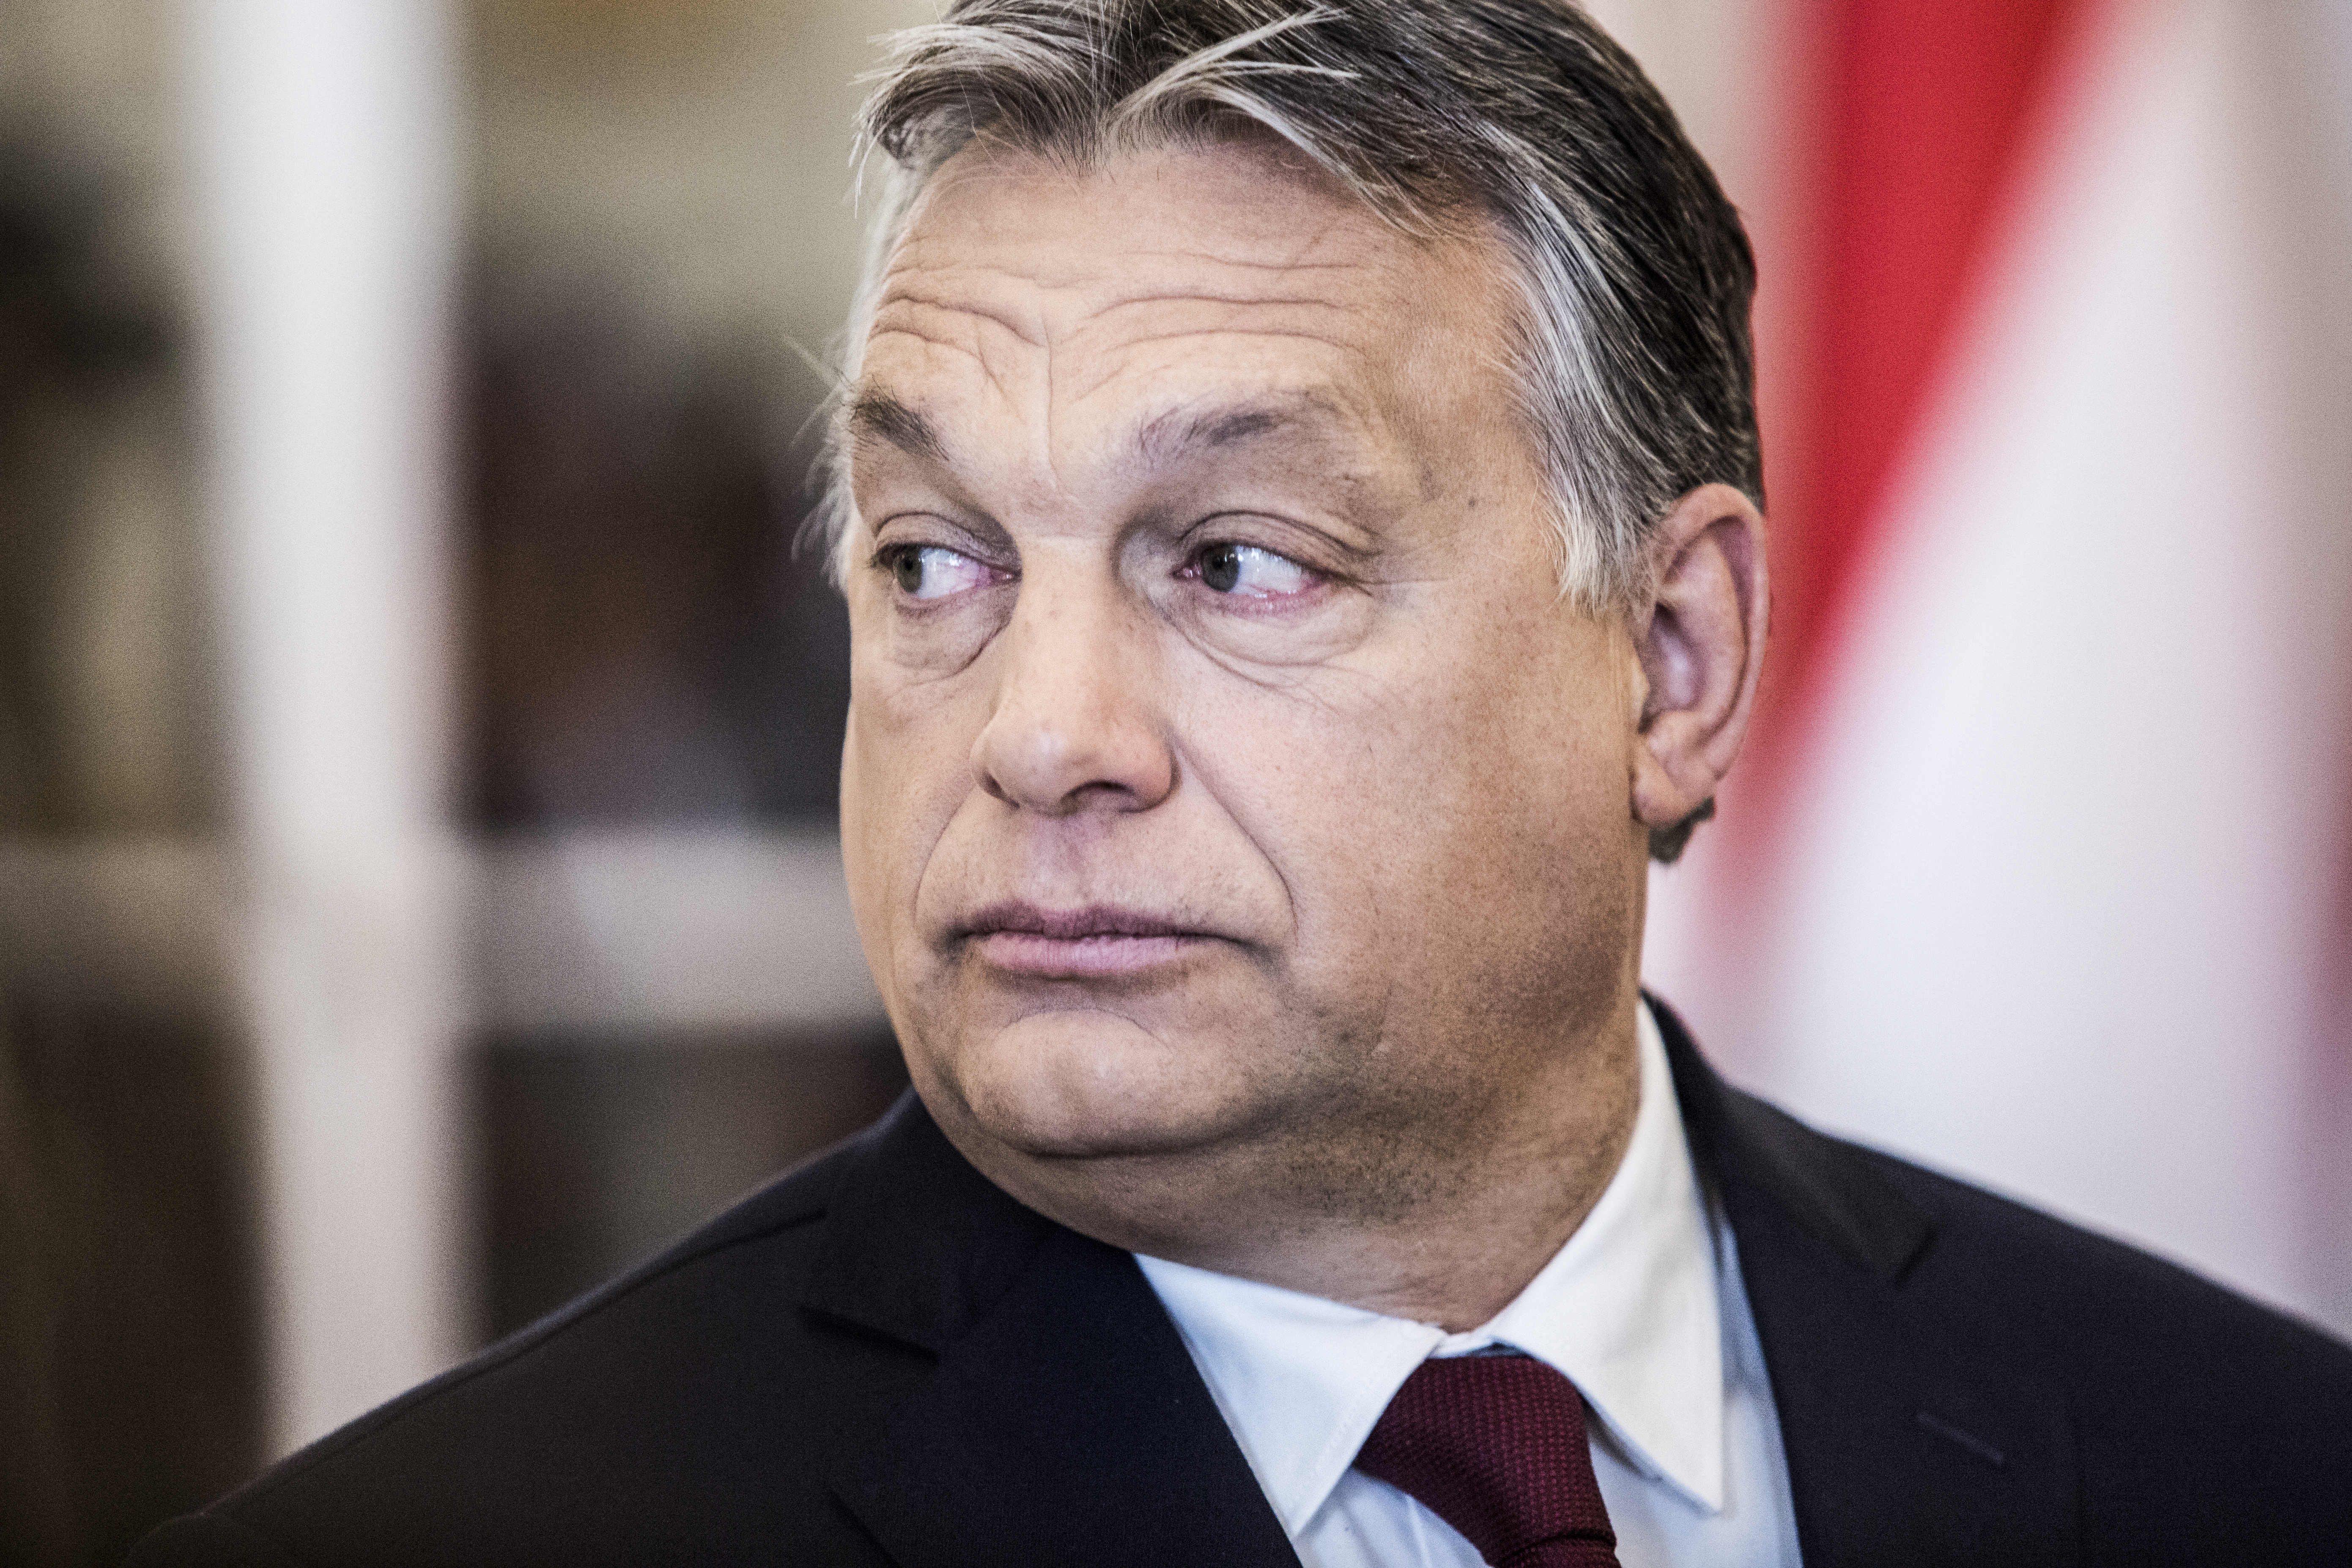 Itt az összes kérdés, amit ma reggel Orbán Viktornak meg kellett válaszolnia a Kossuth Rádióban